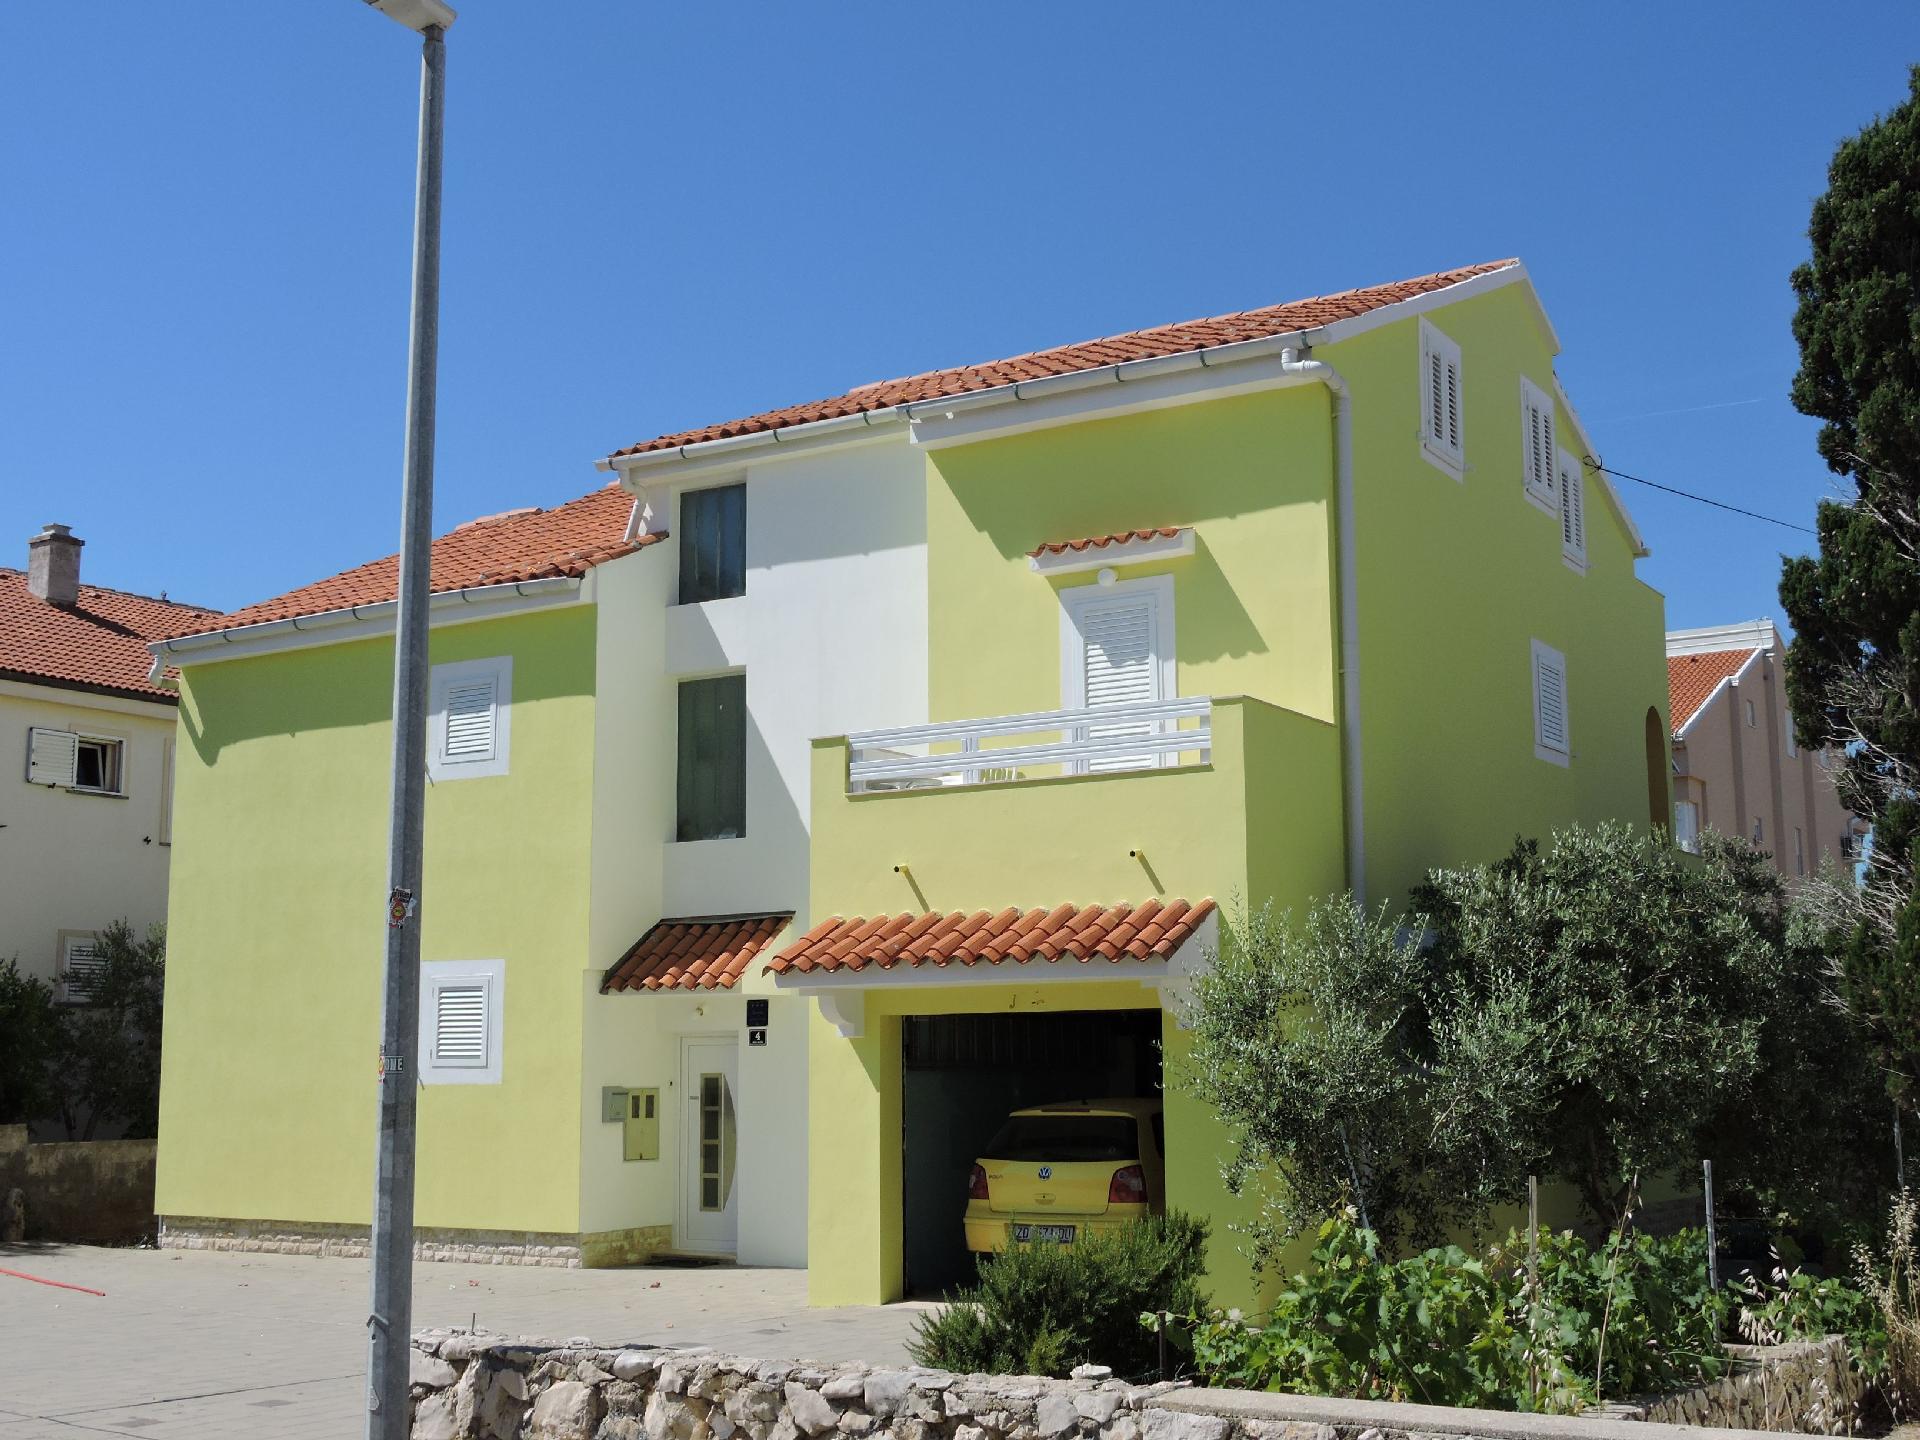 Ferienhaus für 6 Personen ca. 56 m² in N Ferienwohnung in Kroatien